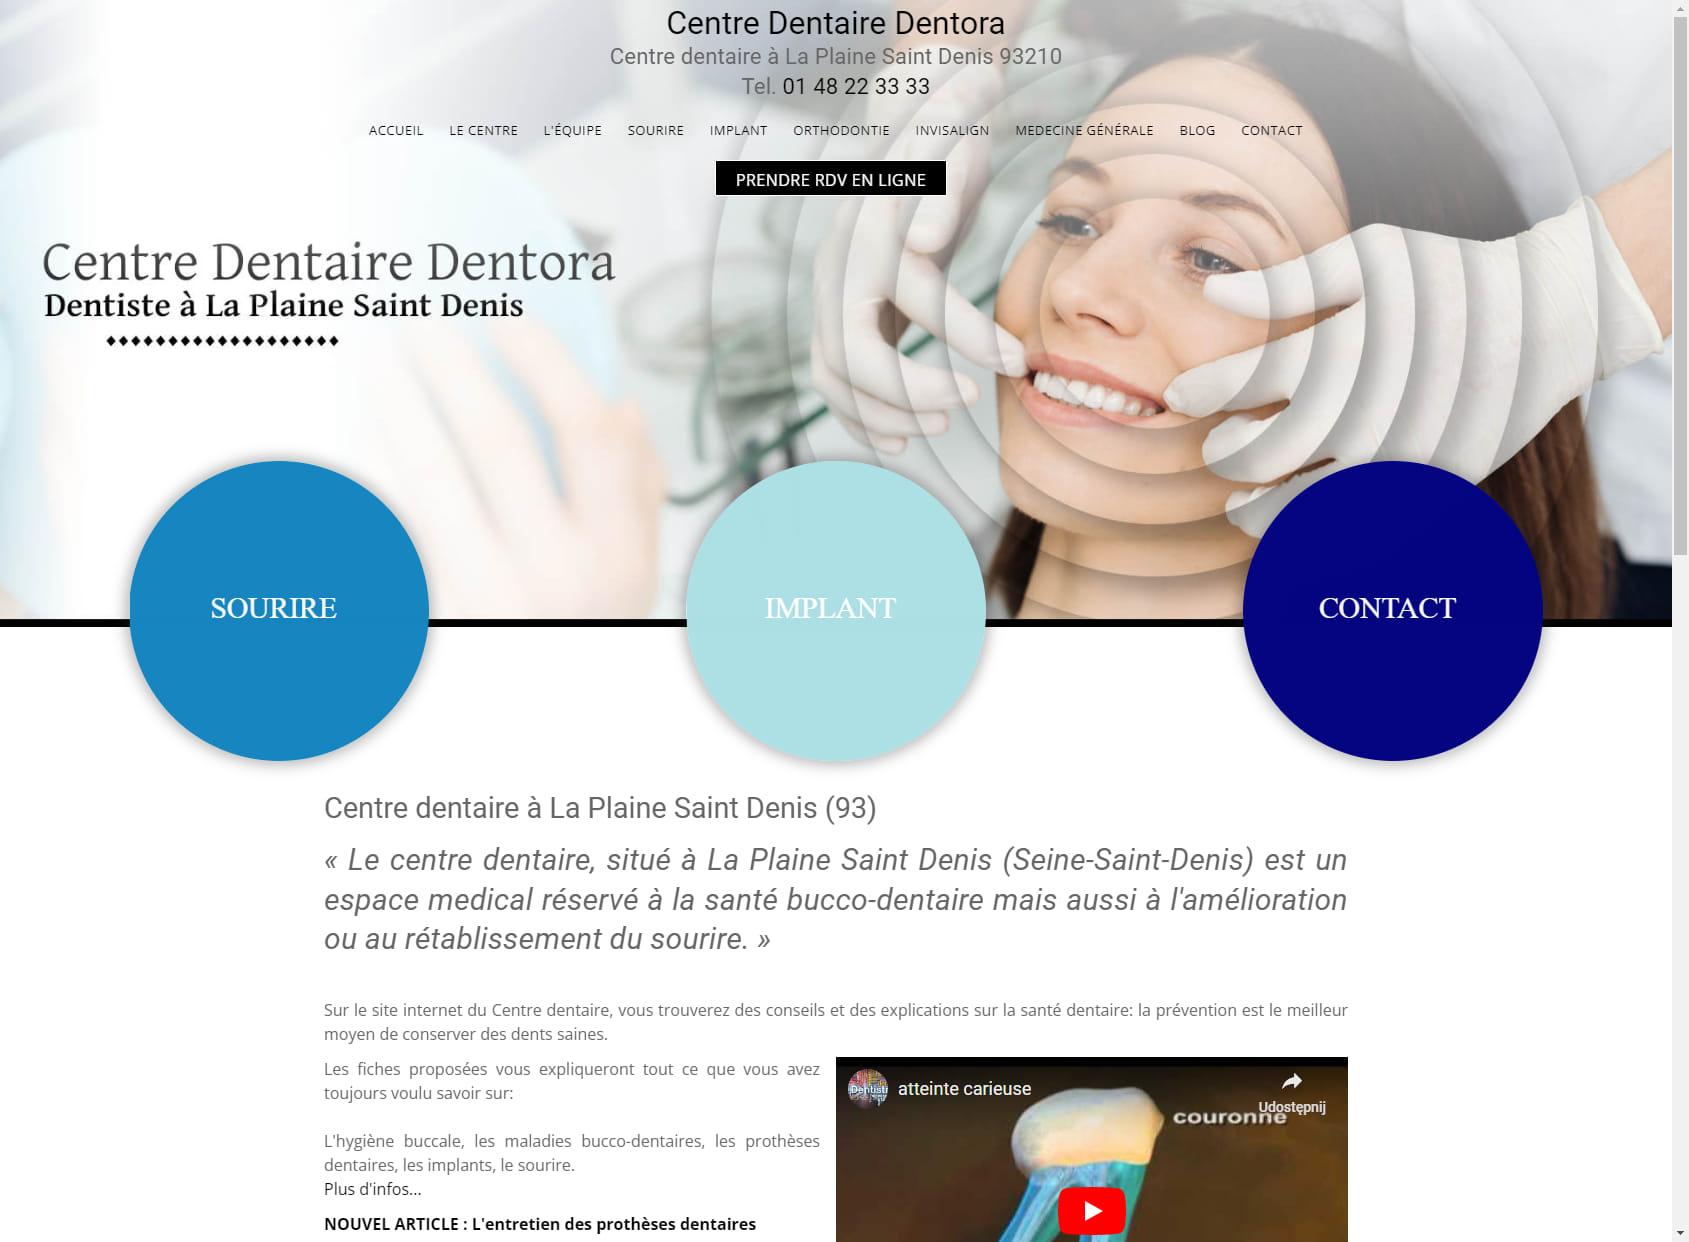 Medical-Dental Center Dentora